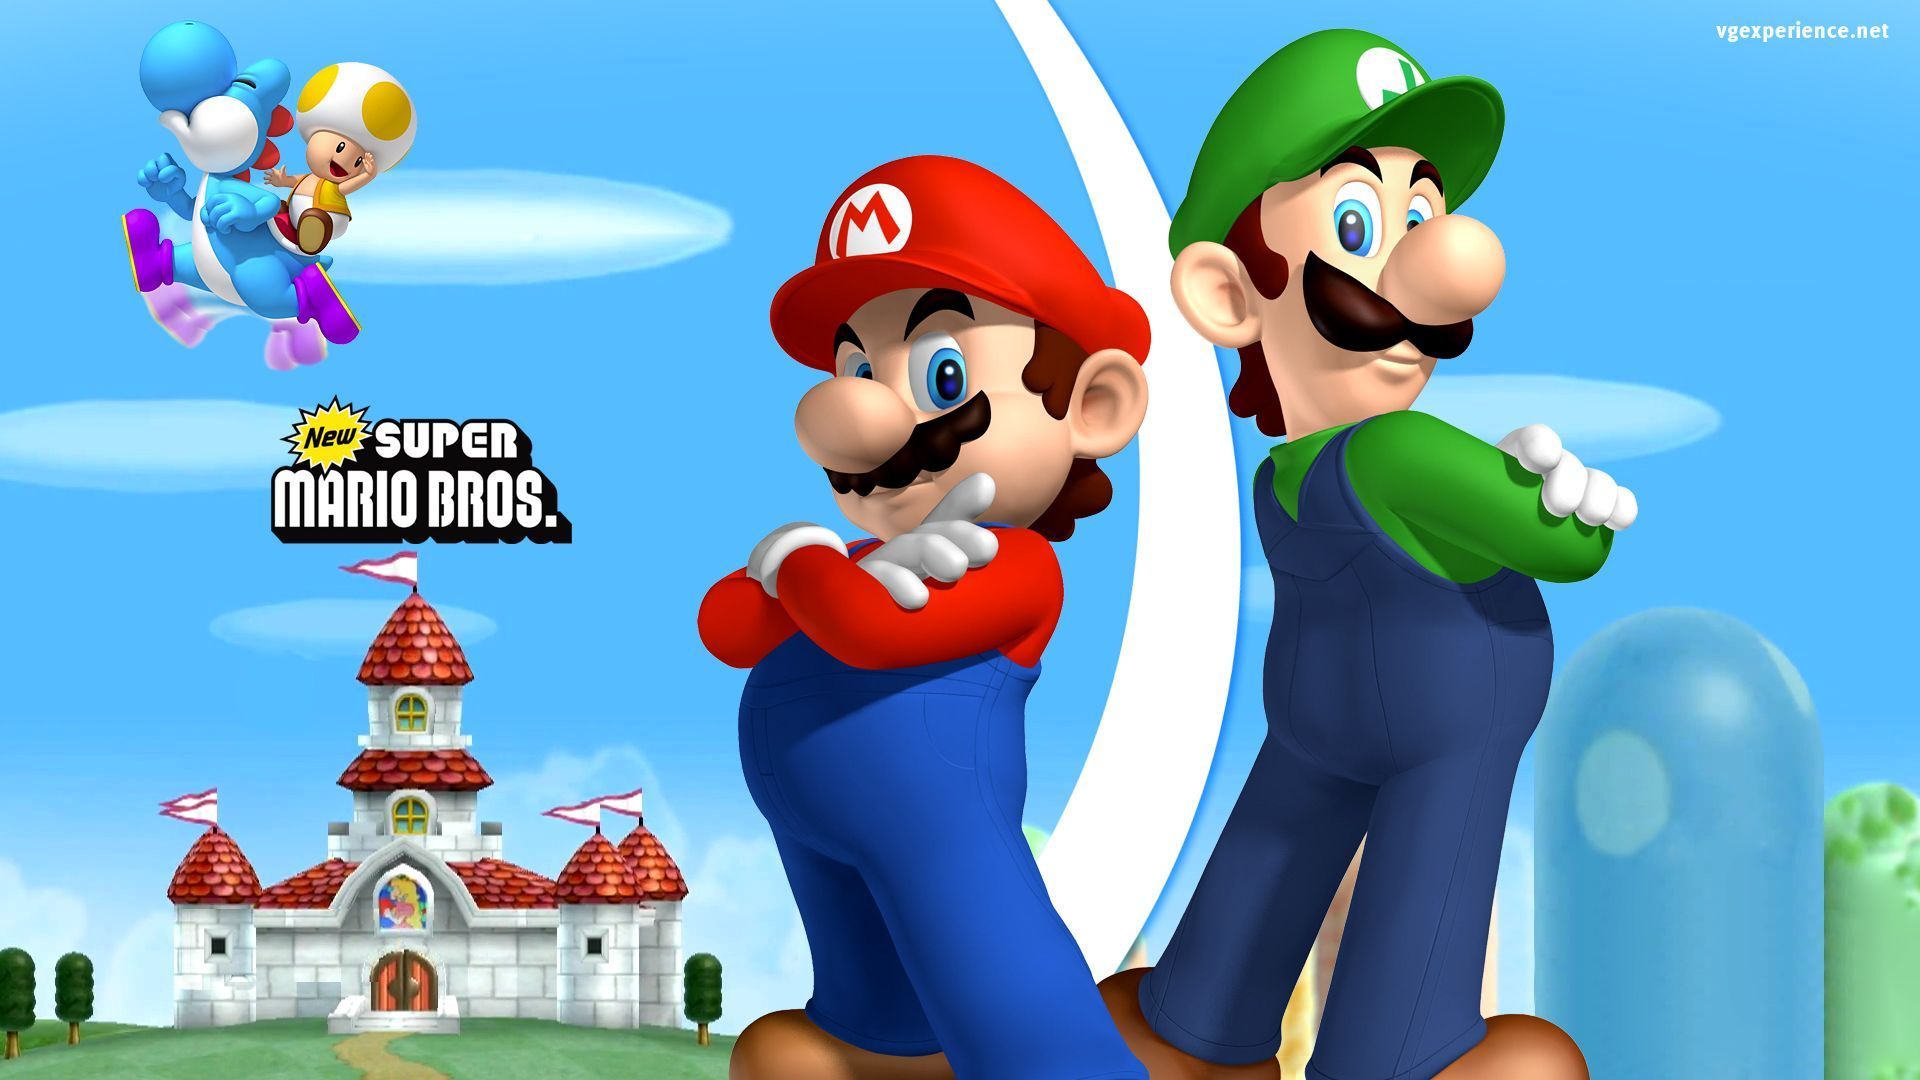 Super Mario Bros 3 - wallpaper.